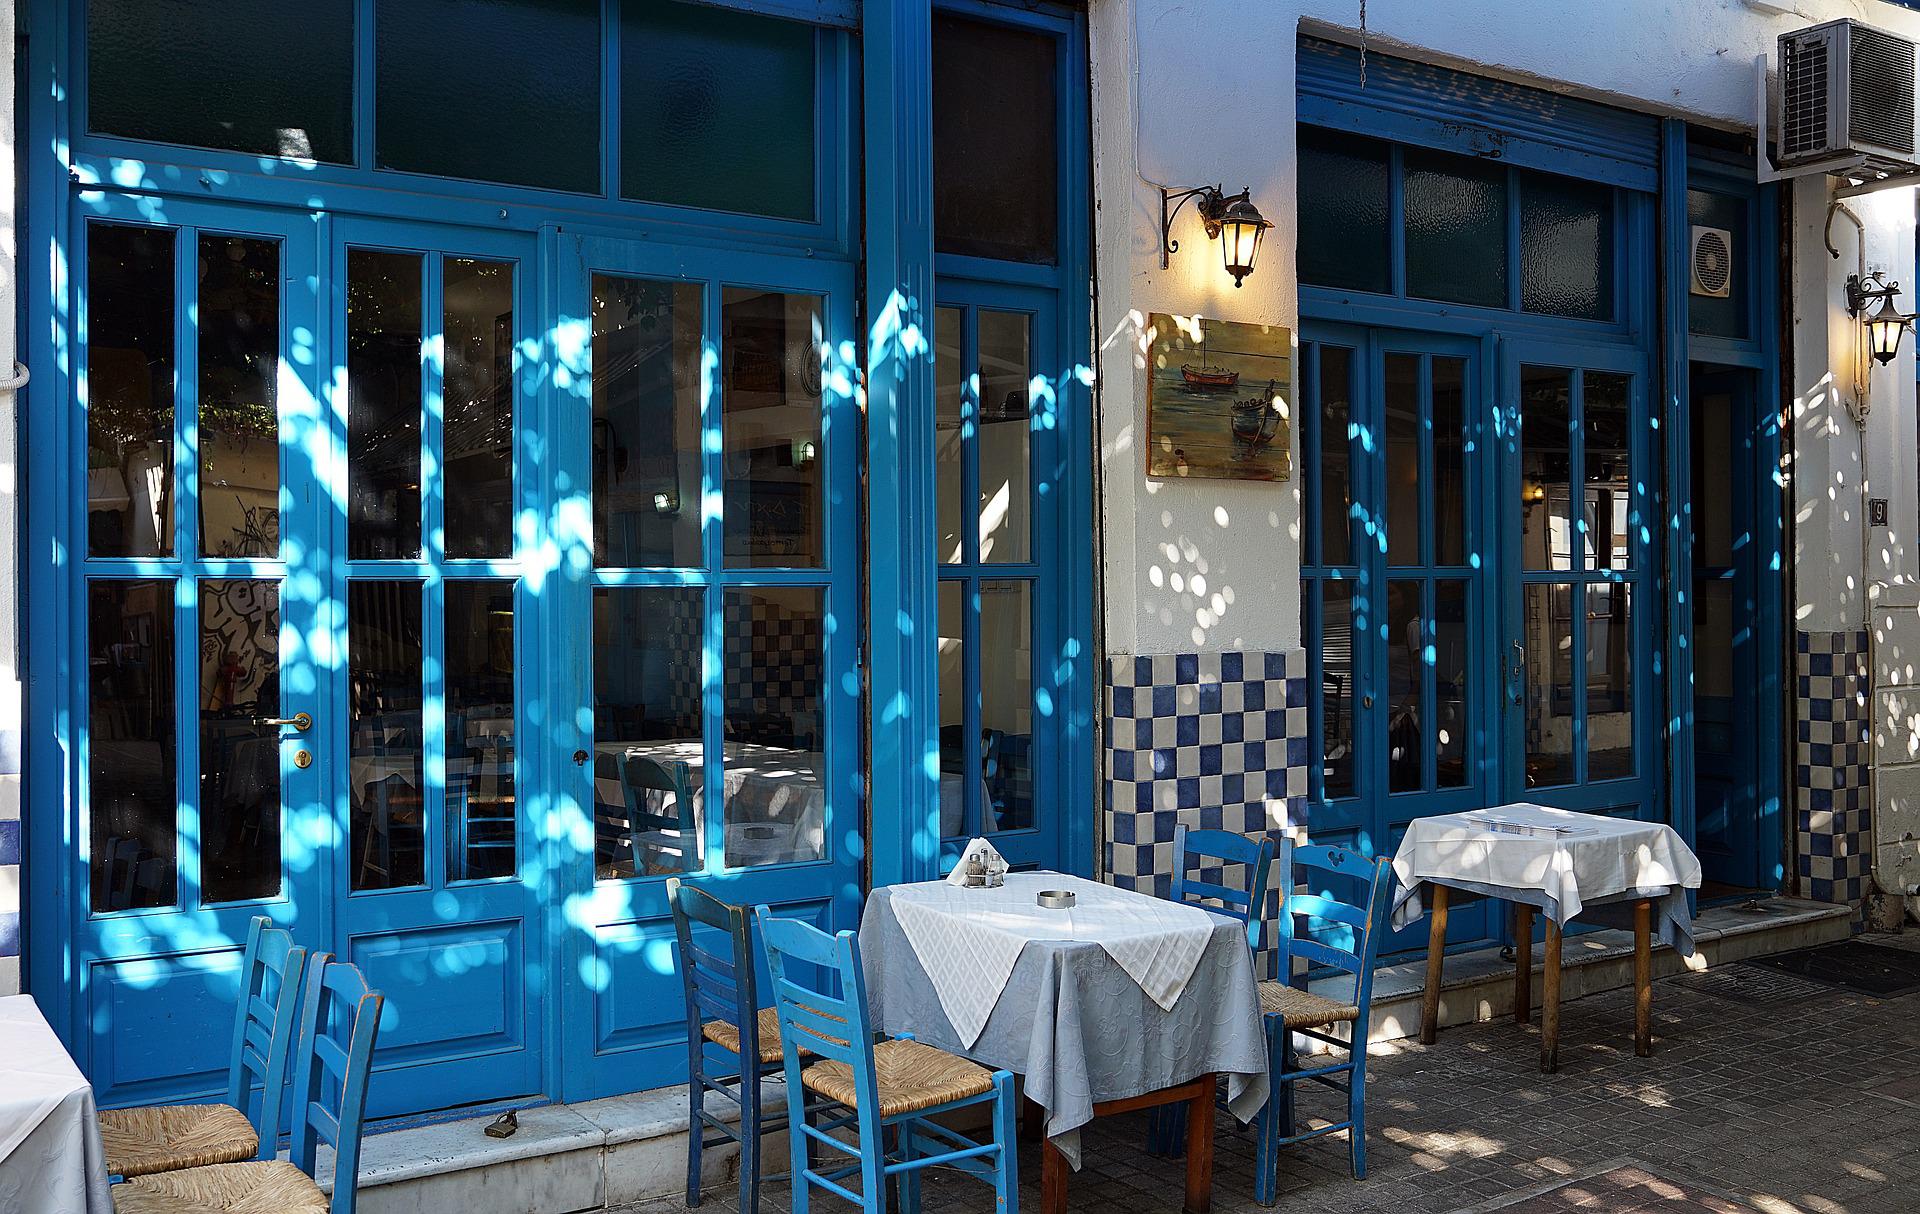 griechisches Restaurant, Symbolbild, blaue Stühle und weiße Tischdecken